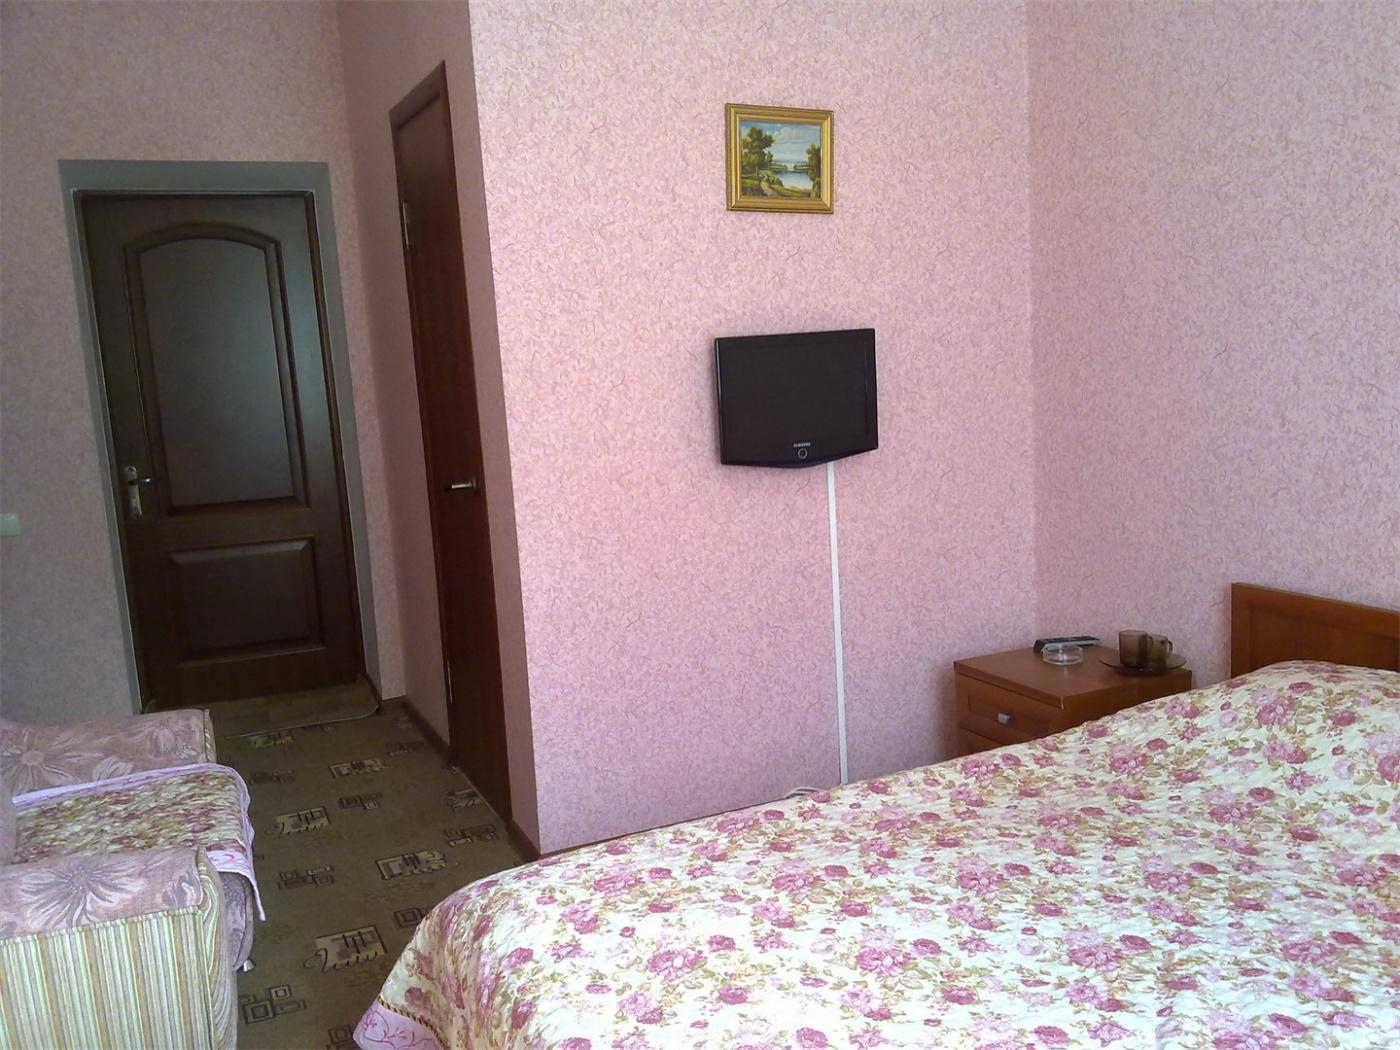  Отель «Седьмой Регион» Кабардино-Балкарская Республика Стандарт DBL, фото 1